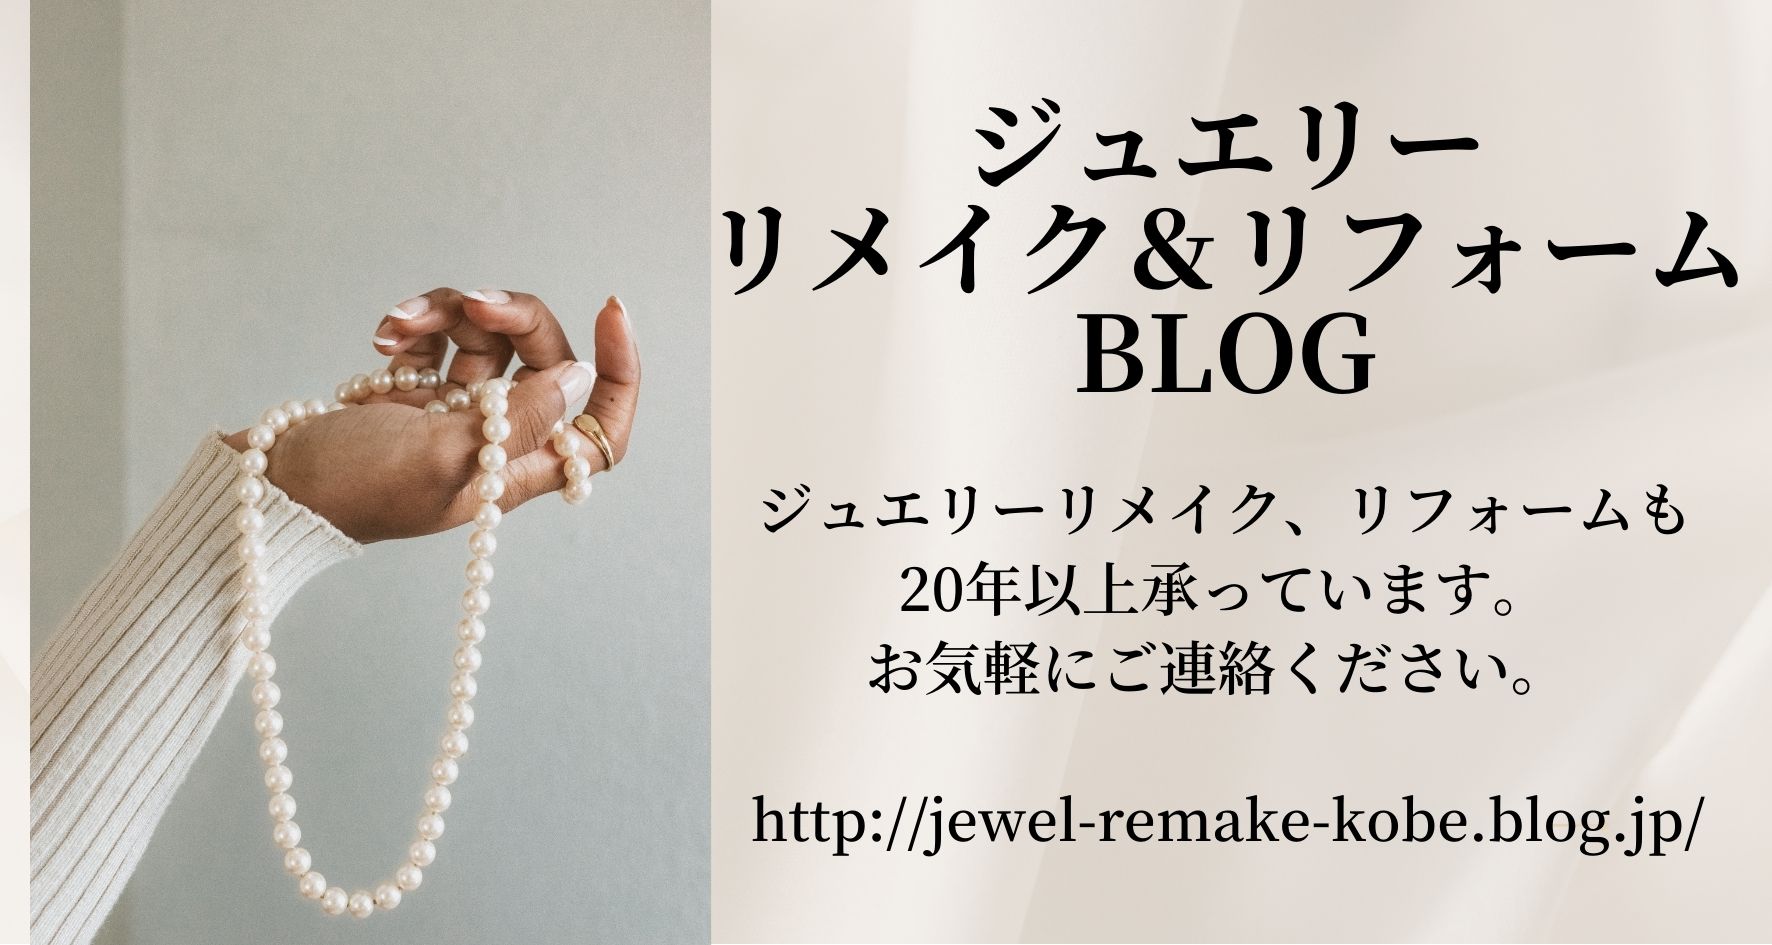 真珠の卸・販売70年の真珠専門店です。真珠の街神戸から全国へお届け